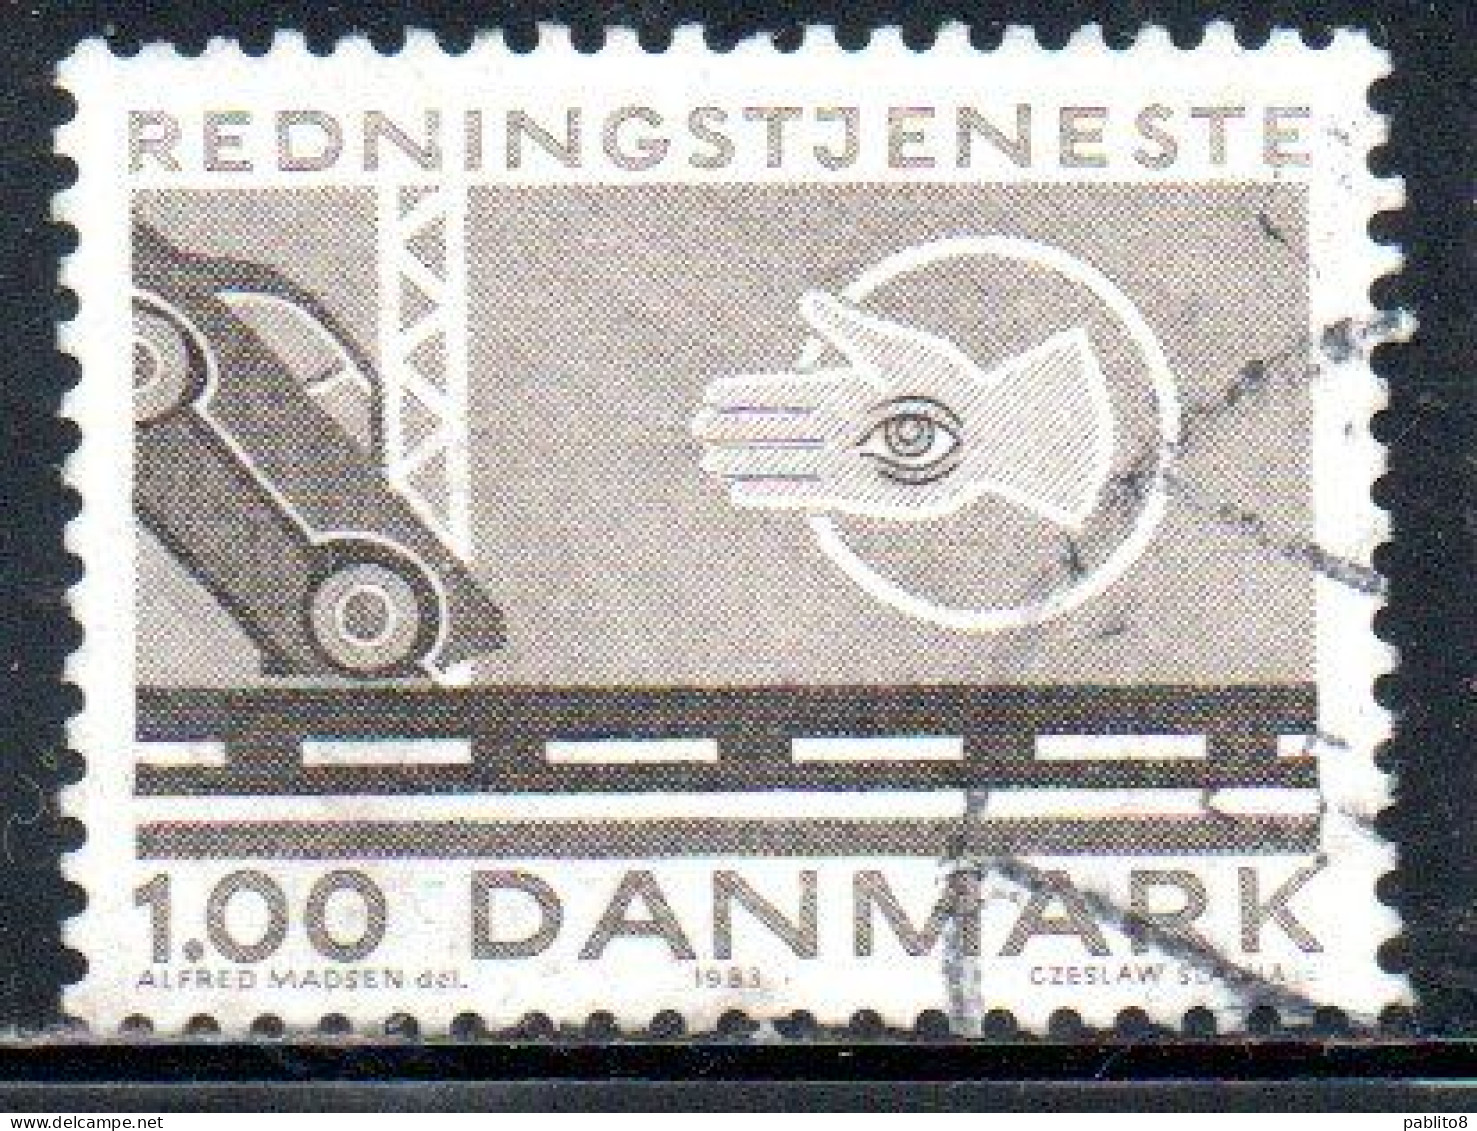 DANEMARK DANMARK DENMARK DANIMARCA 1983 LIFE SAVING AND SALVAGE SERVICE CAR CRASH POLICE 1k USED USATO OBLITERE - Used Stamps